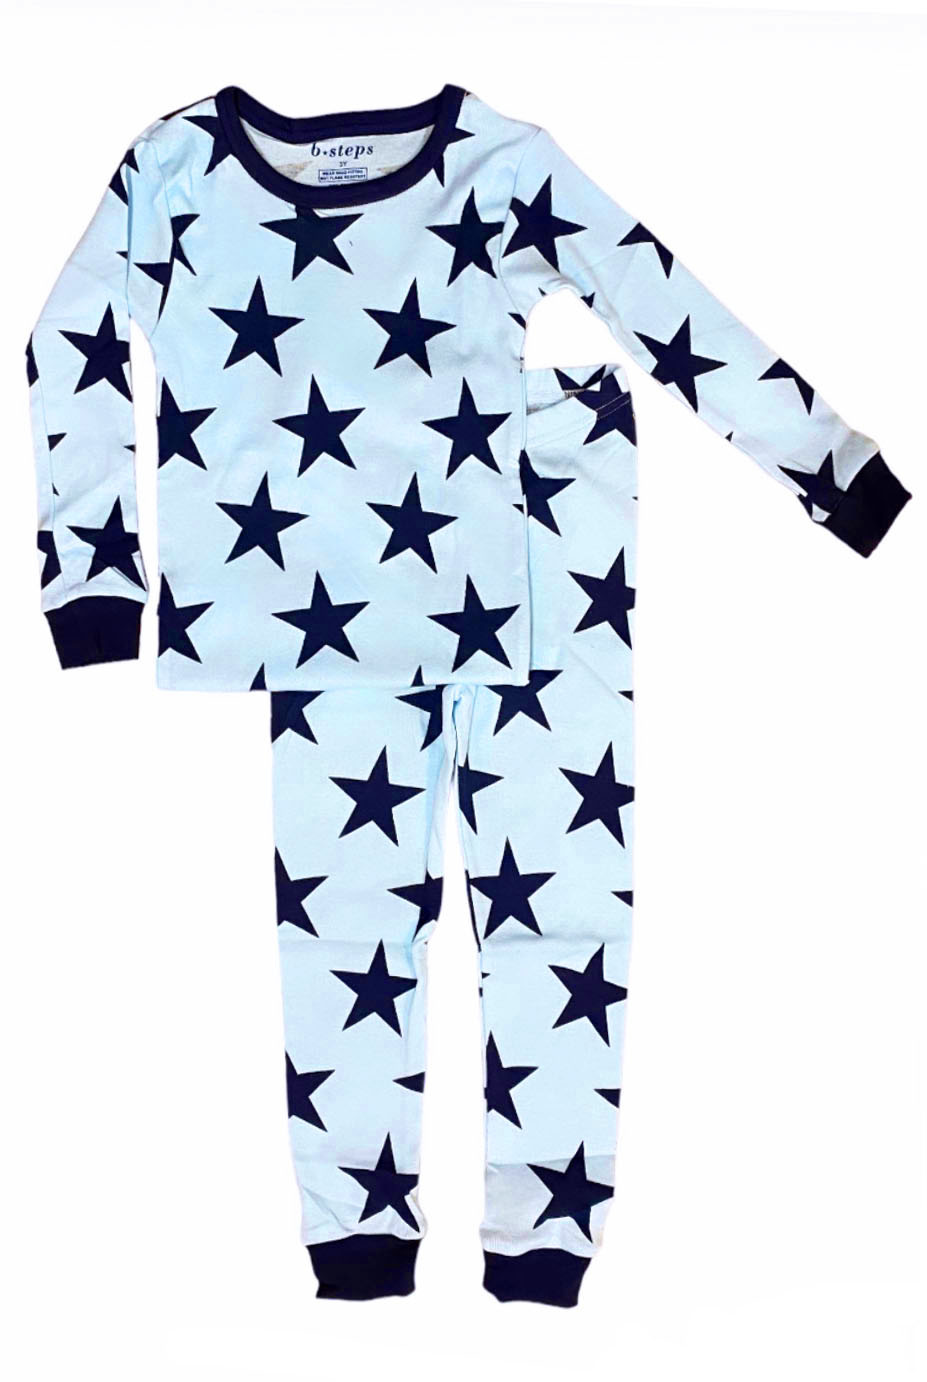 Baby Steps Large Blue Star Infant PJ Set